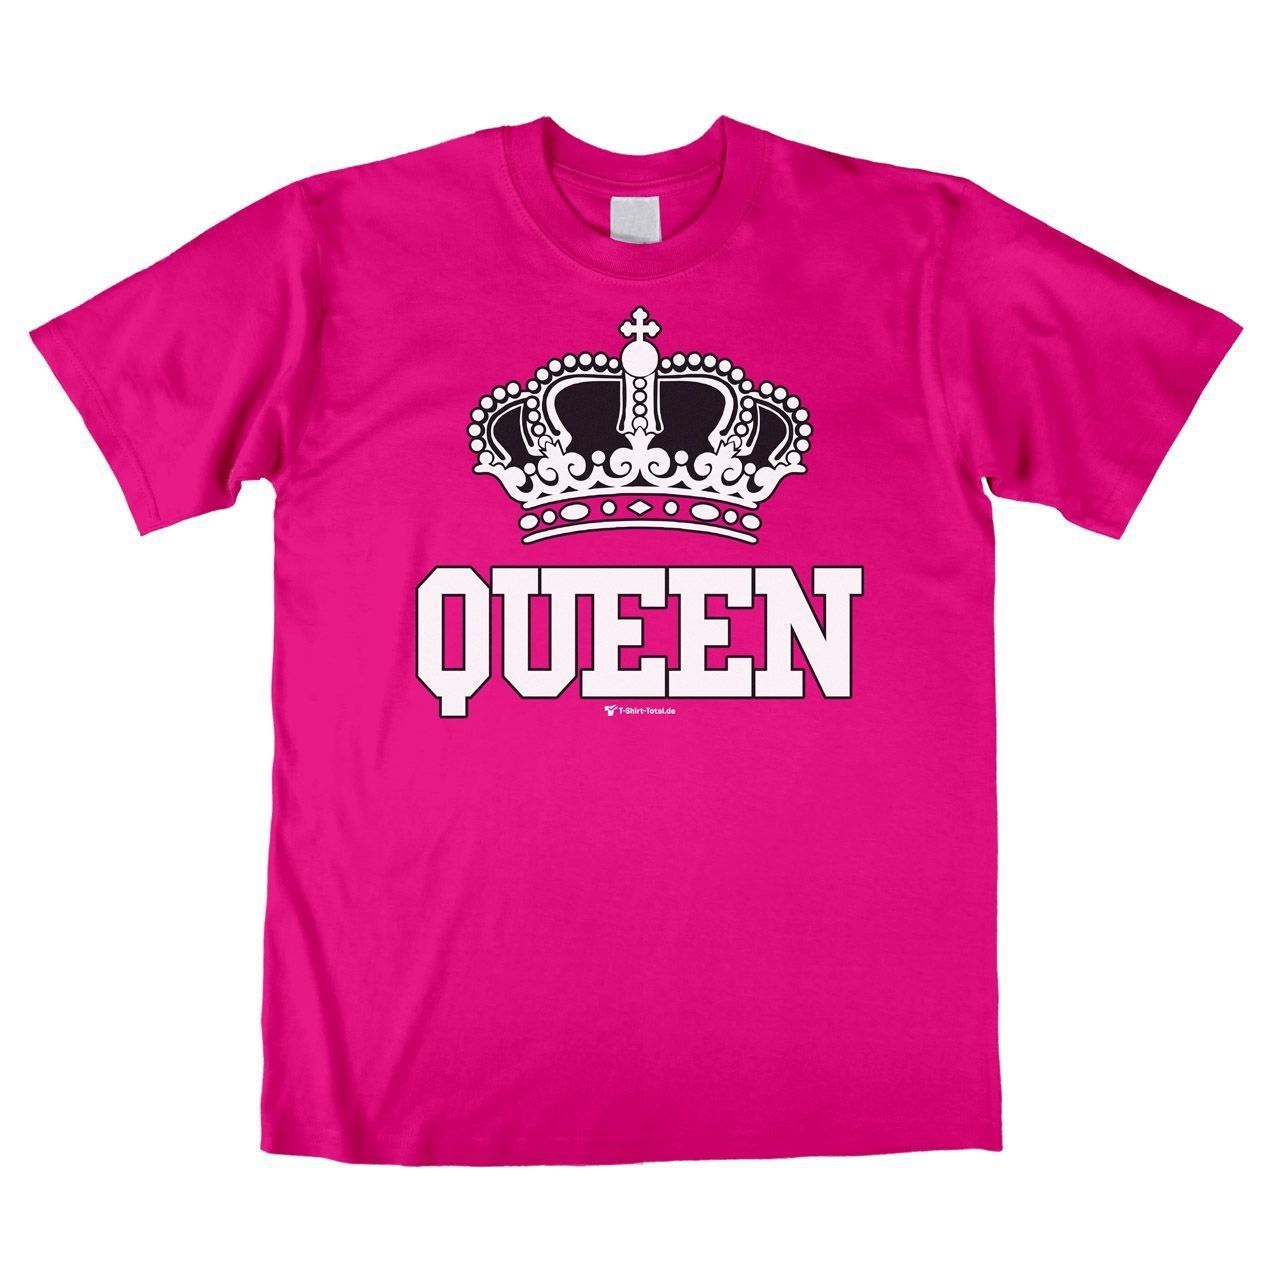 Queen Unisex T-Shirt pink Medium